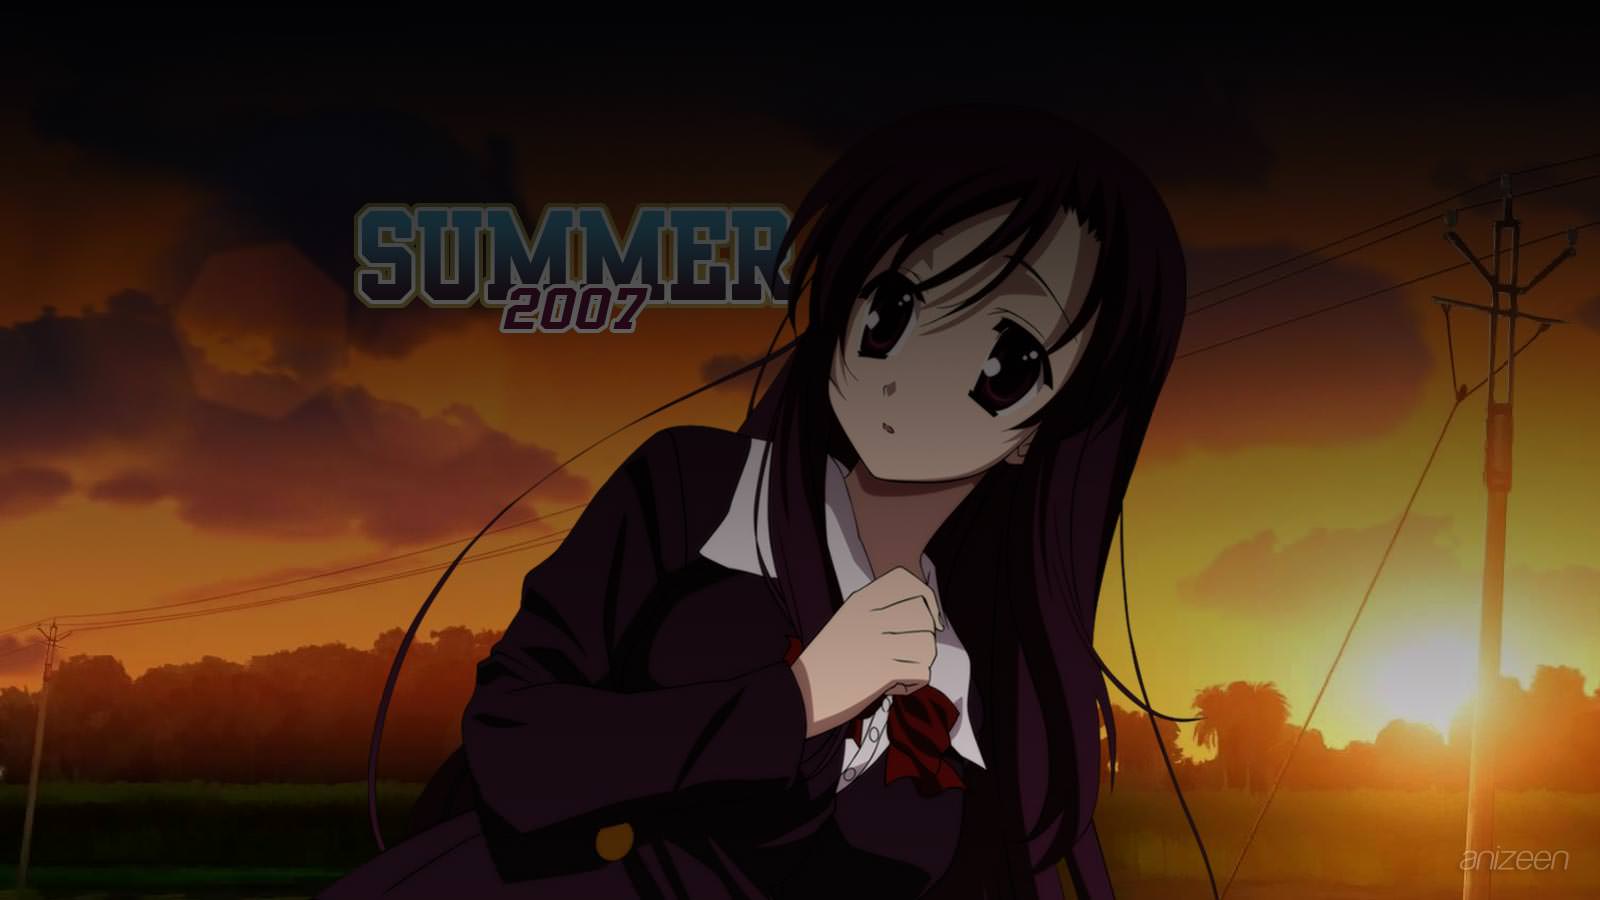 Summer Anime Season 2007